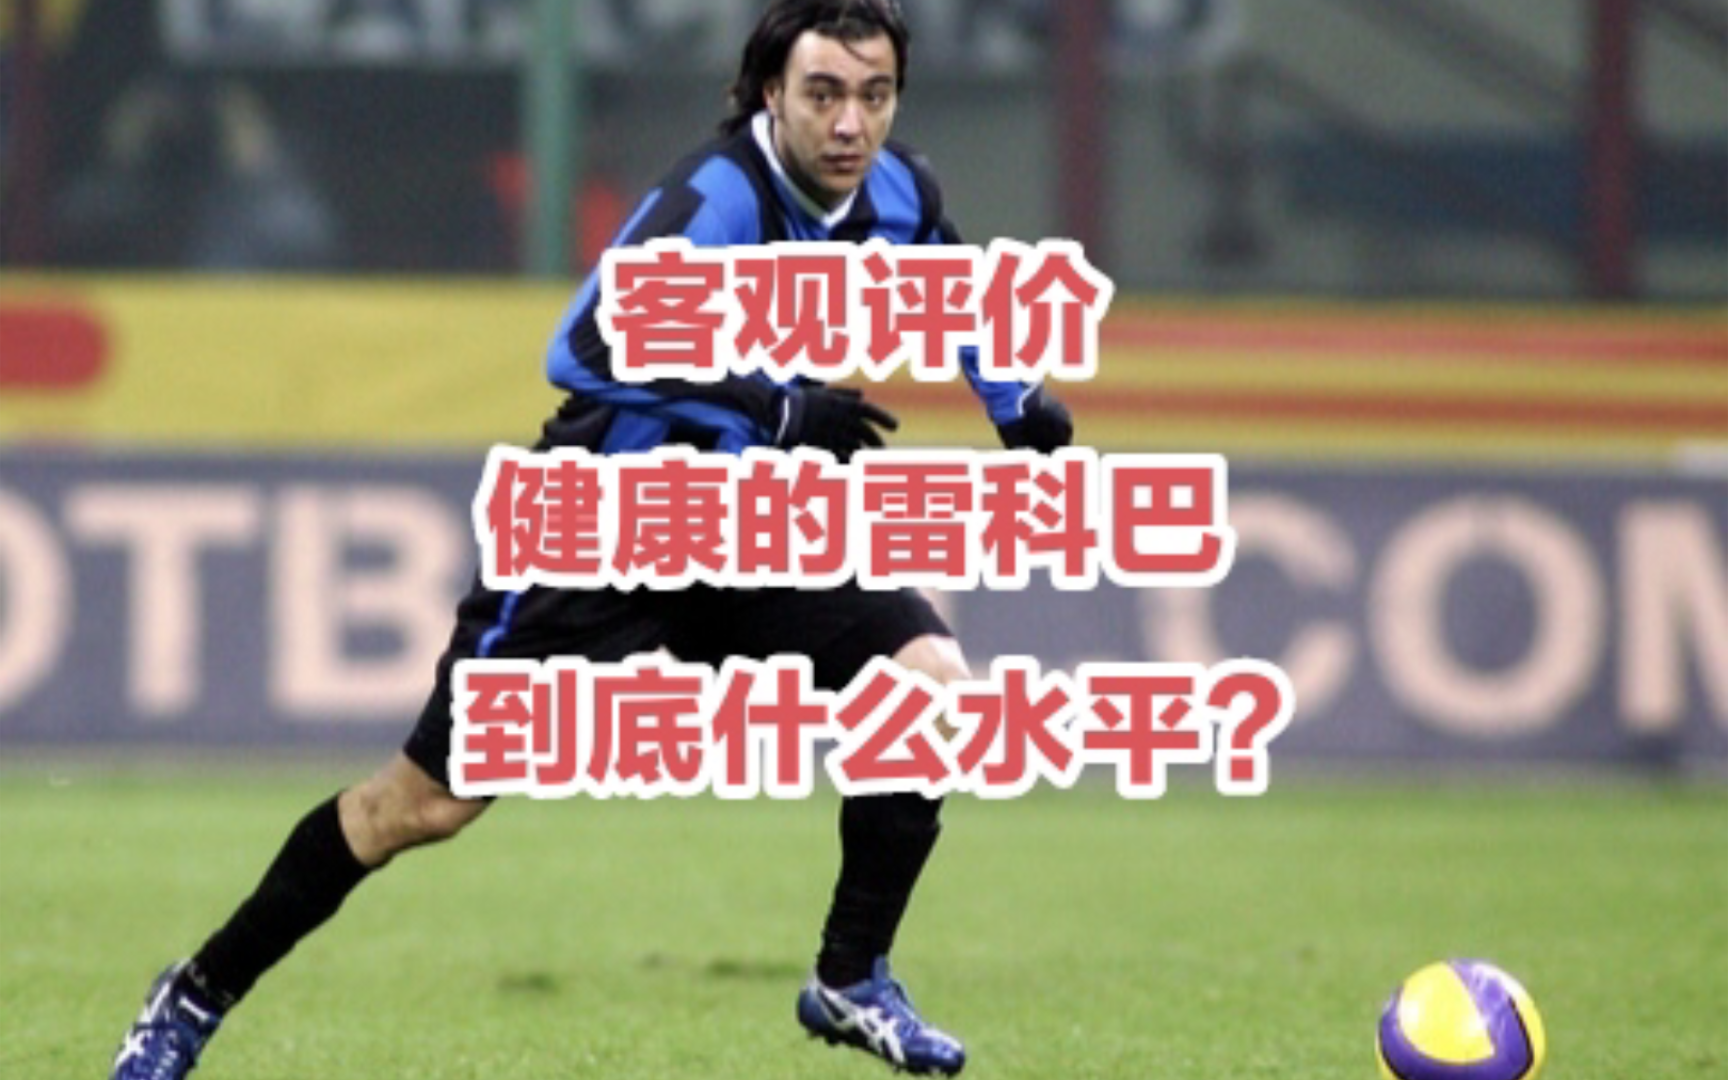 客观评价:中国男孩雷科巴到底什么水平？重温黄金左脚精彩进球